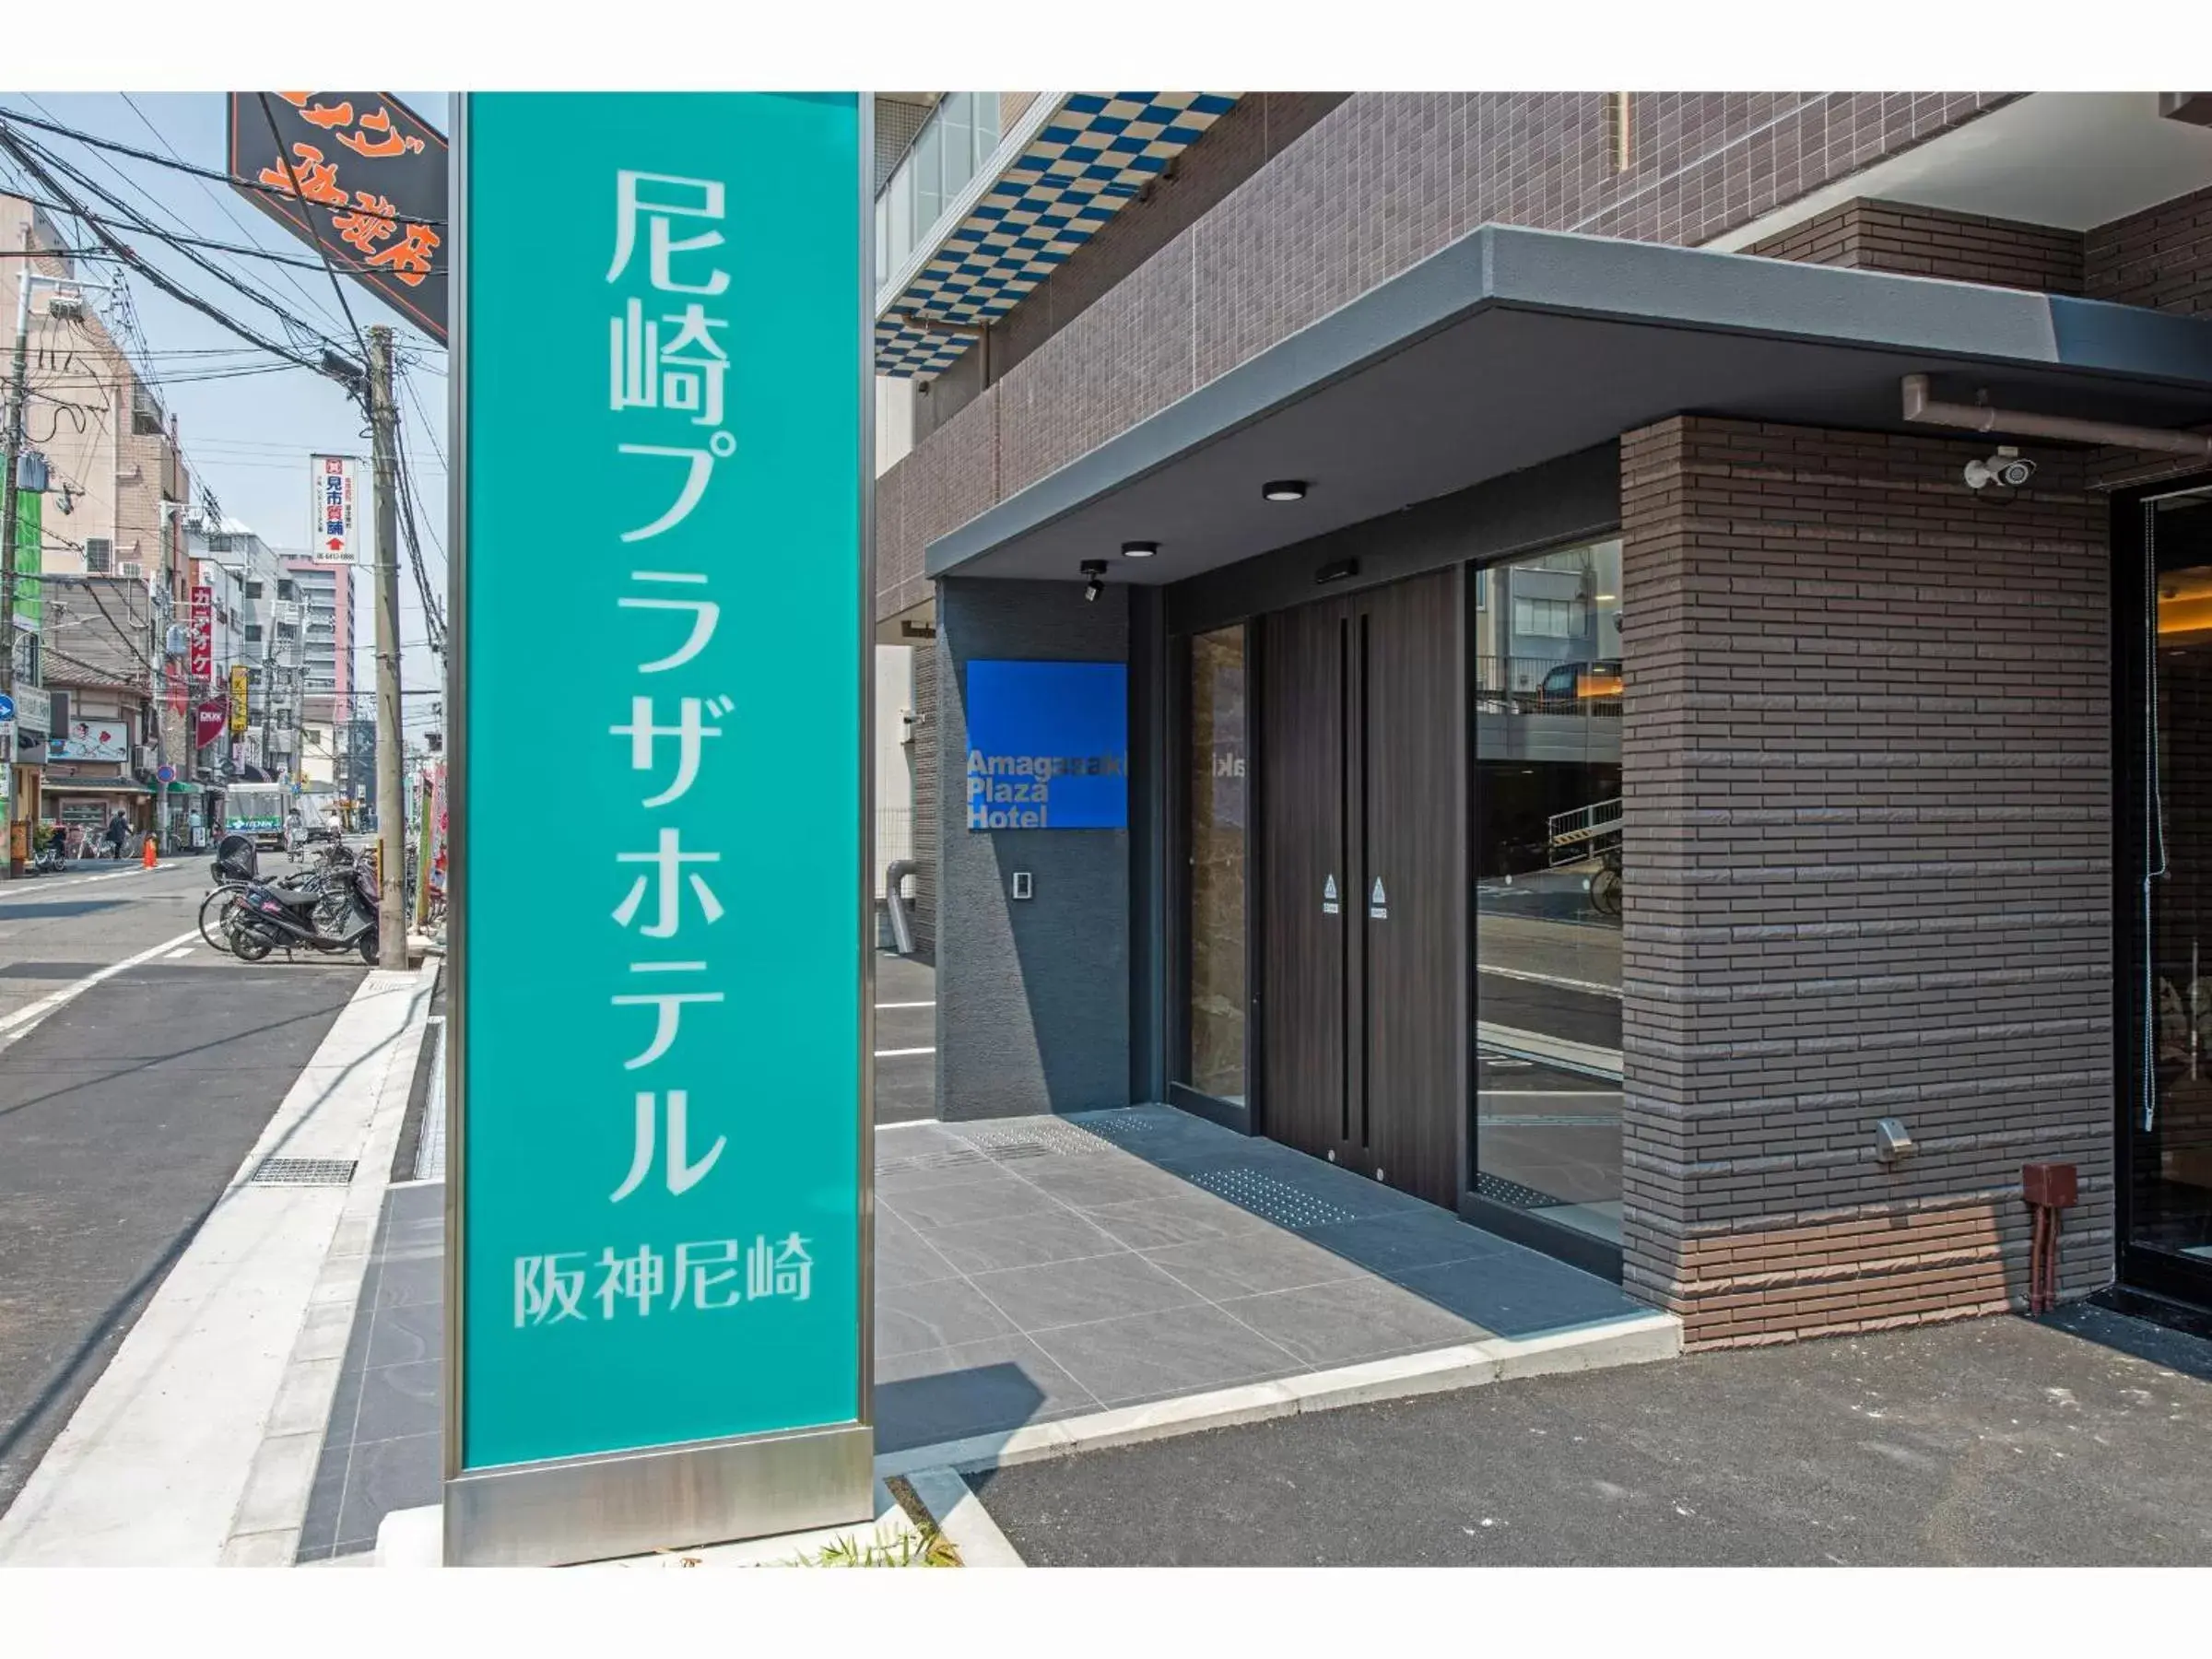 Facade/entrance in Amagasaki Plaza Hotel Hanshin Amagasaki